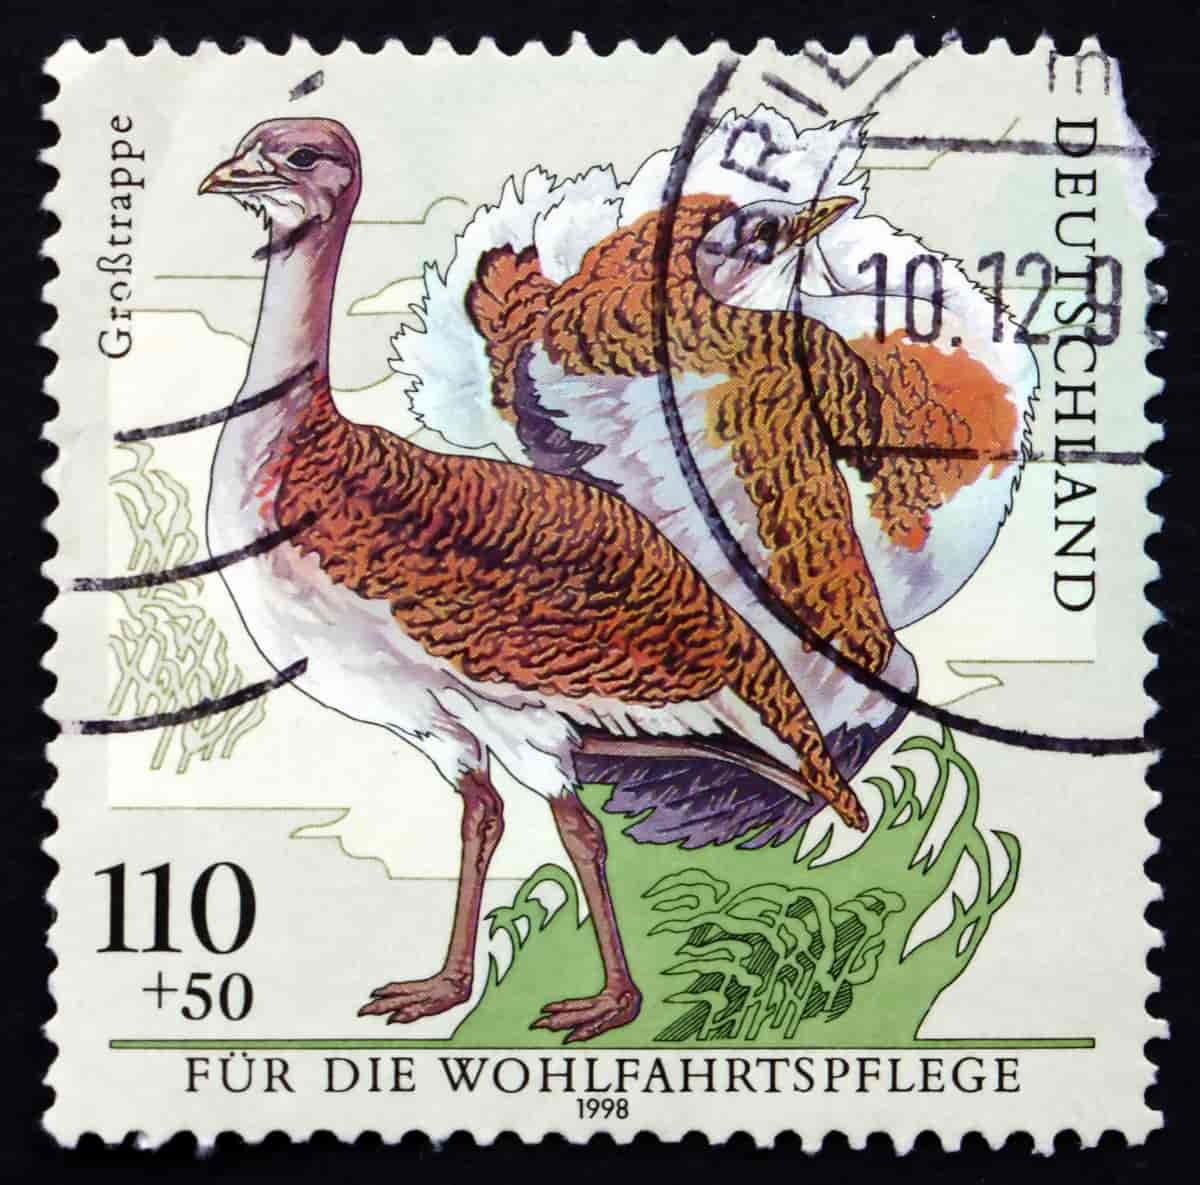 Tysk frimerke fra 1998 med stortrappe